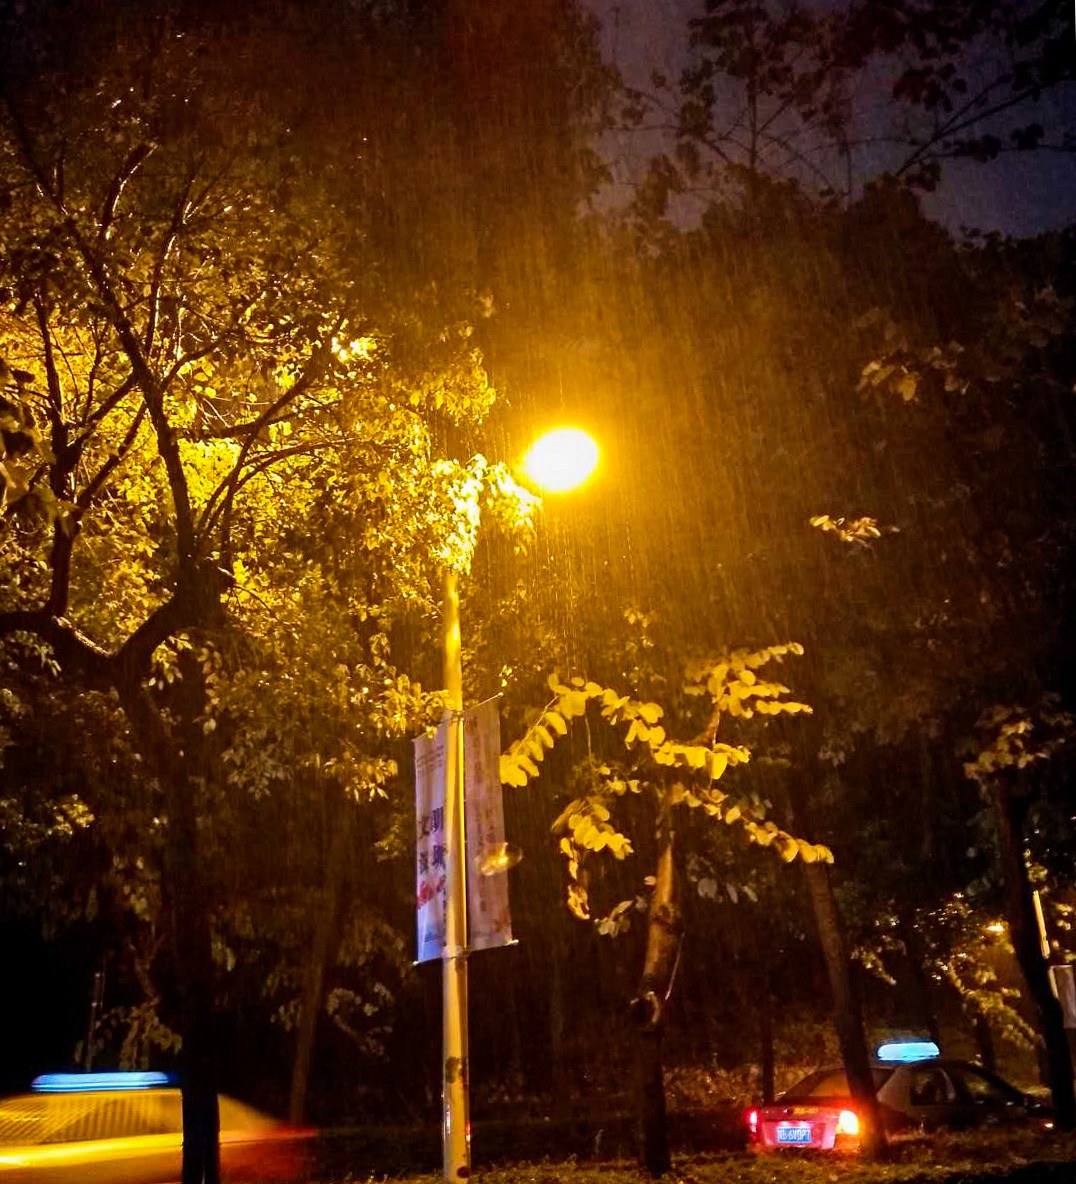 我在深圳 ●这座城市风雨再大,也总有人晚归家